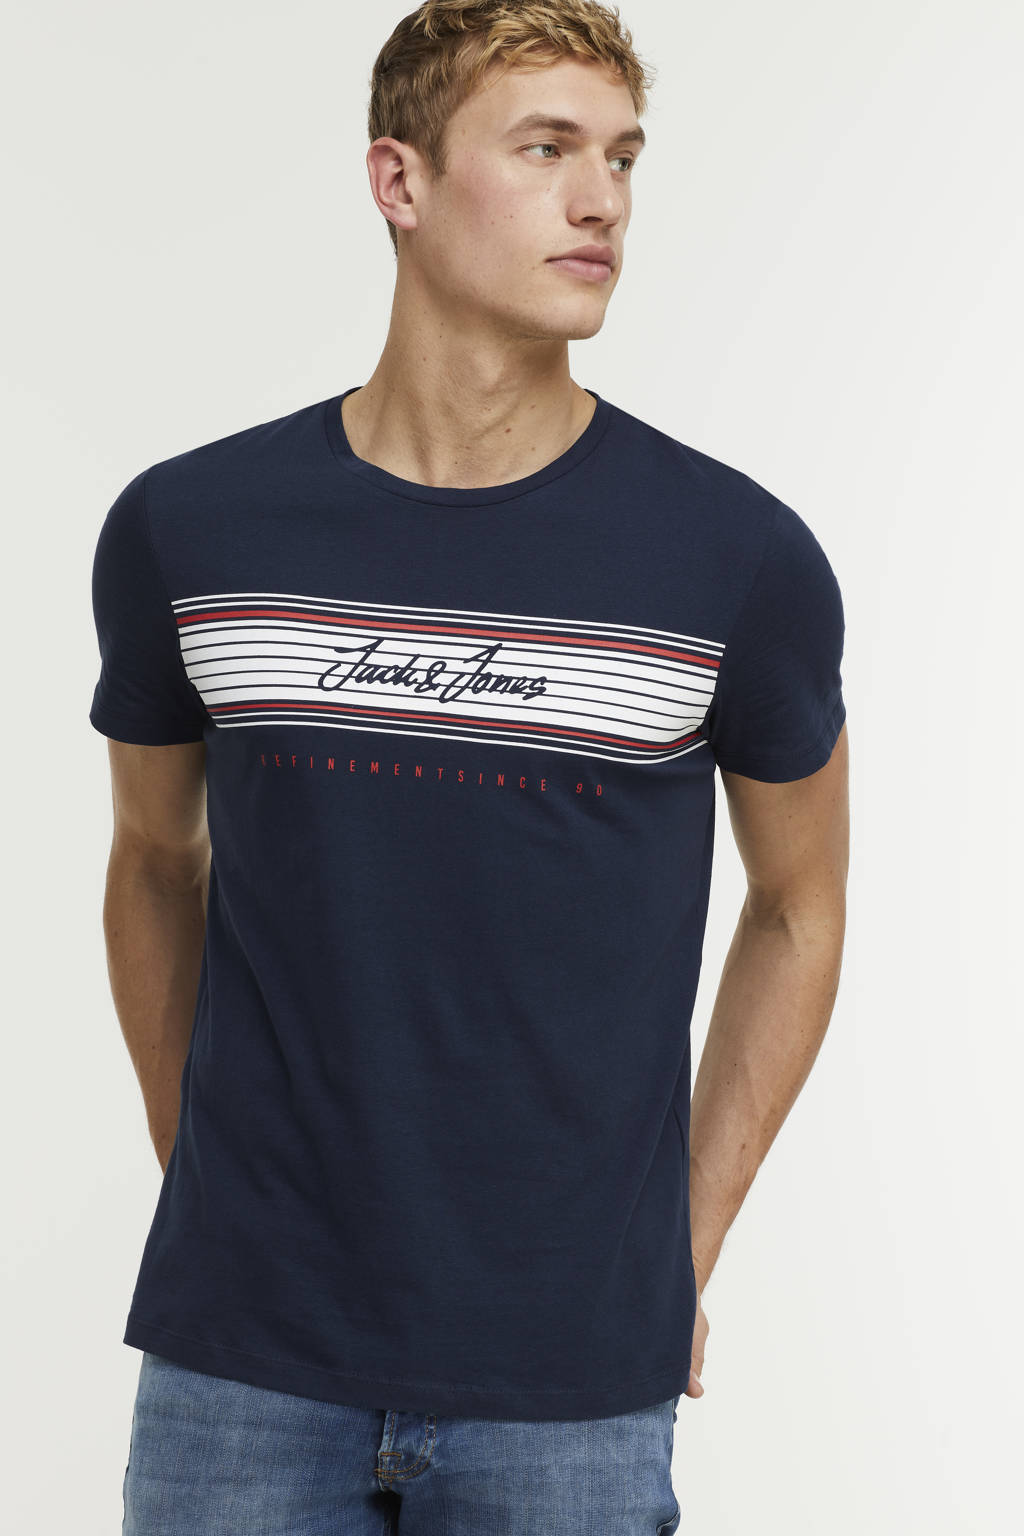 Donkerblauwe heren JACK & JONES T-shirt van katoen met logo dessin, korte mouwen en ronde hals